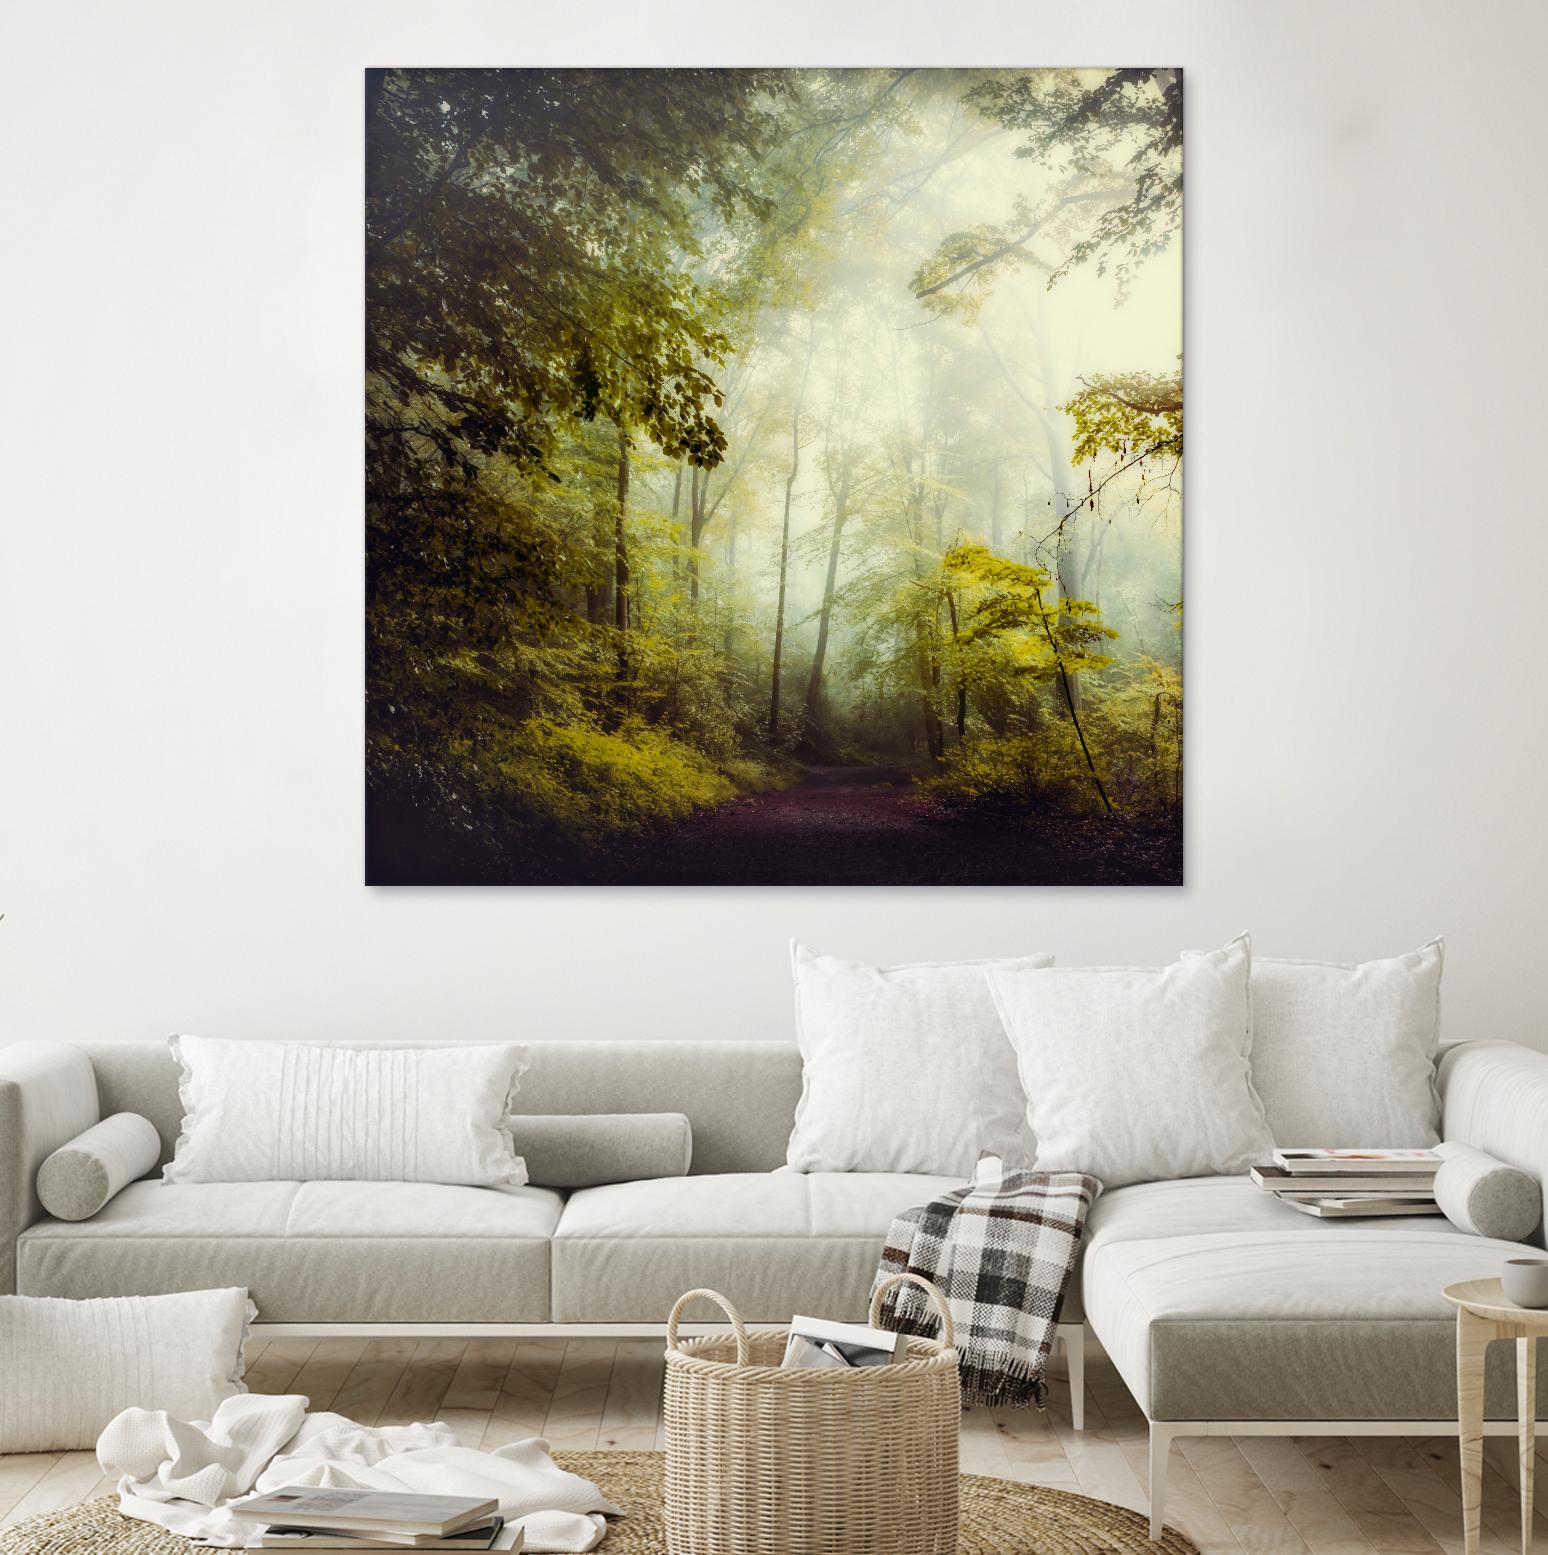 Glorious Woods - Art Print by Dirk Wuestenhagen | GIANT ART